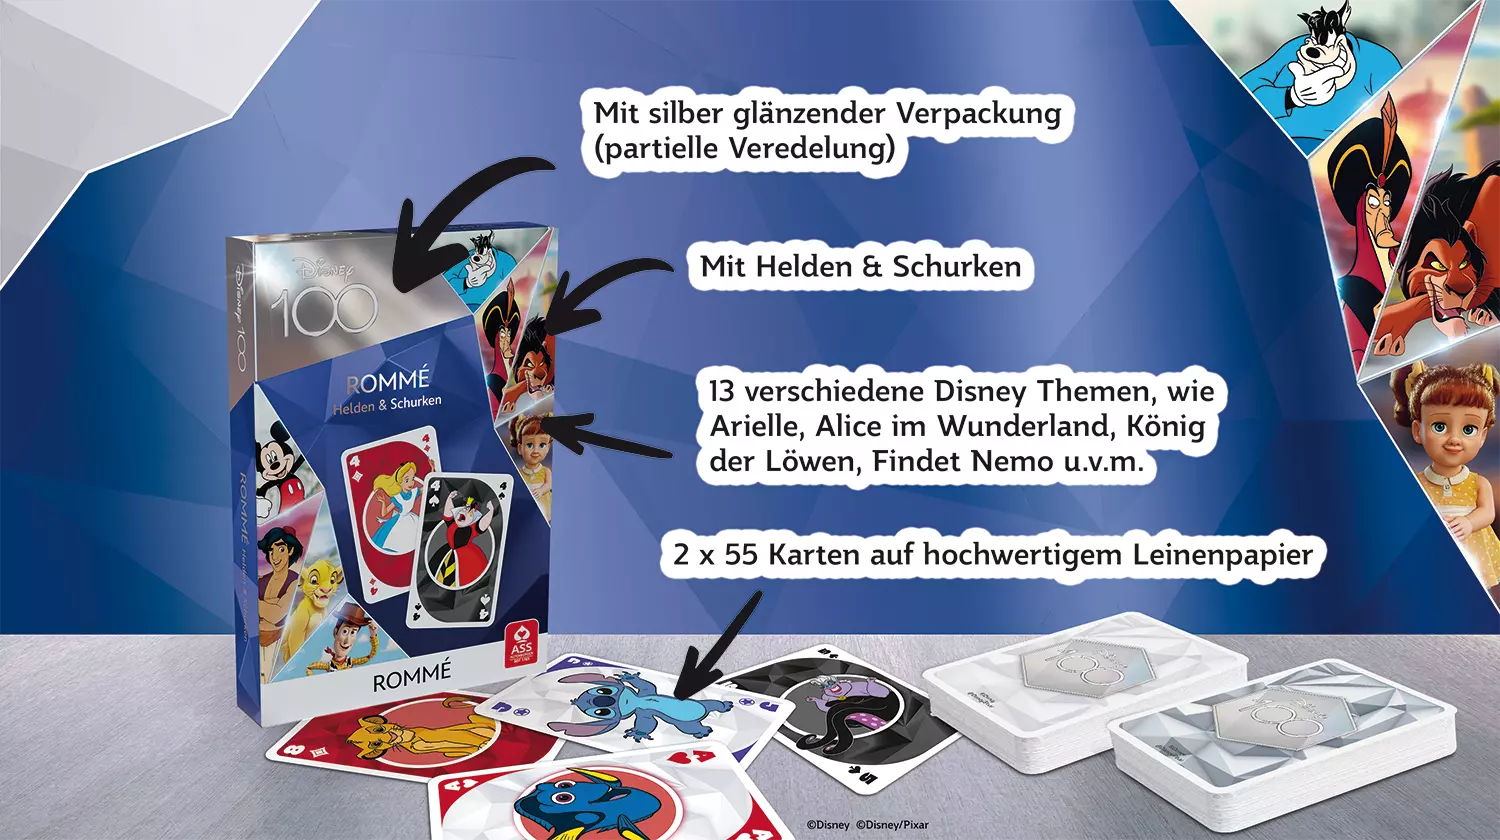 Es ist das ASS Altenburger Disney 100 Rommé Kartenspiel zu sehen, auf der Grafik sind außerdem Fakten zu dem Kartenspiel zu sehen.